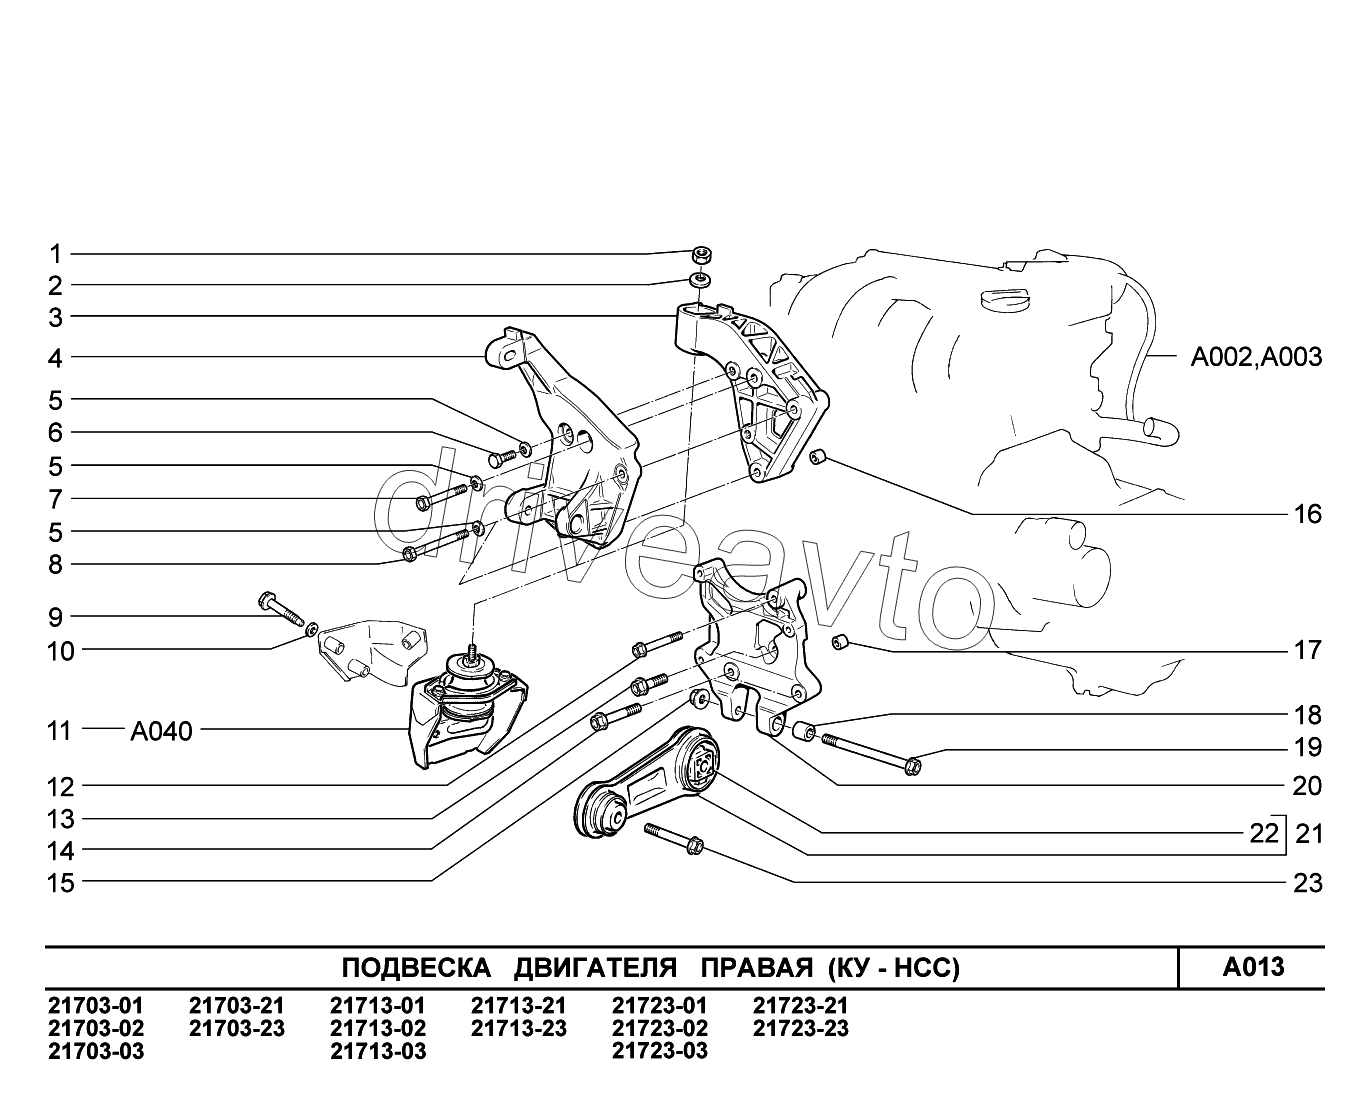 A013. Подвеска двигателя правая